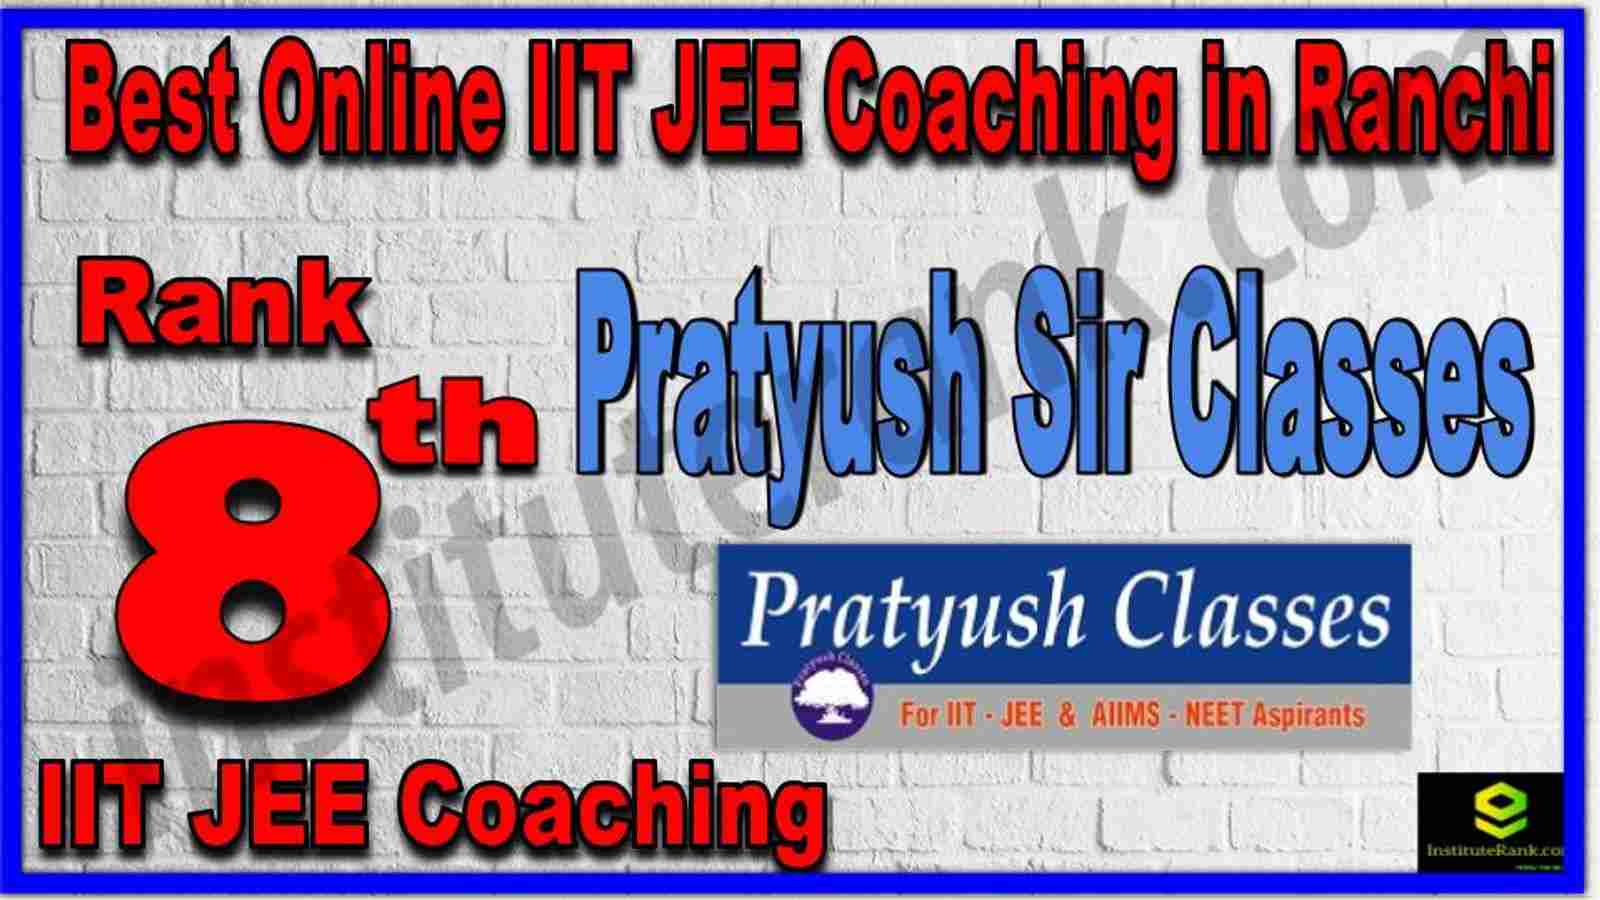 Rank 8th Best Online IIT JEE Coaching in Ranchi